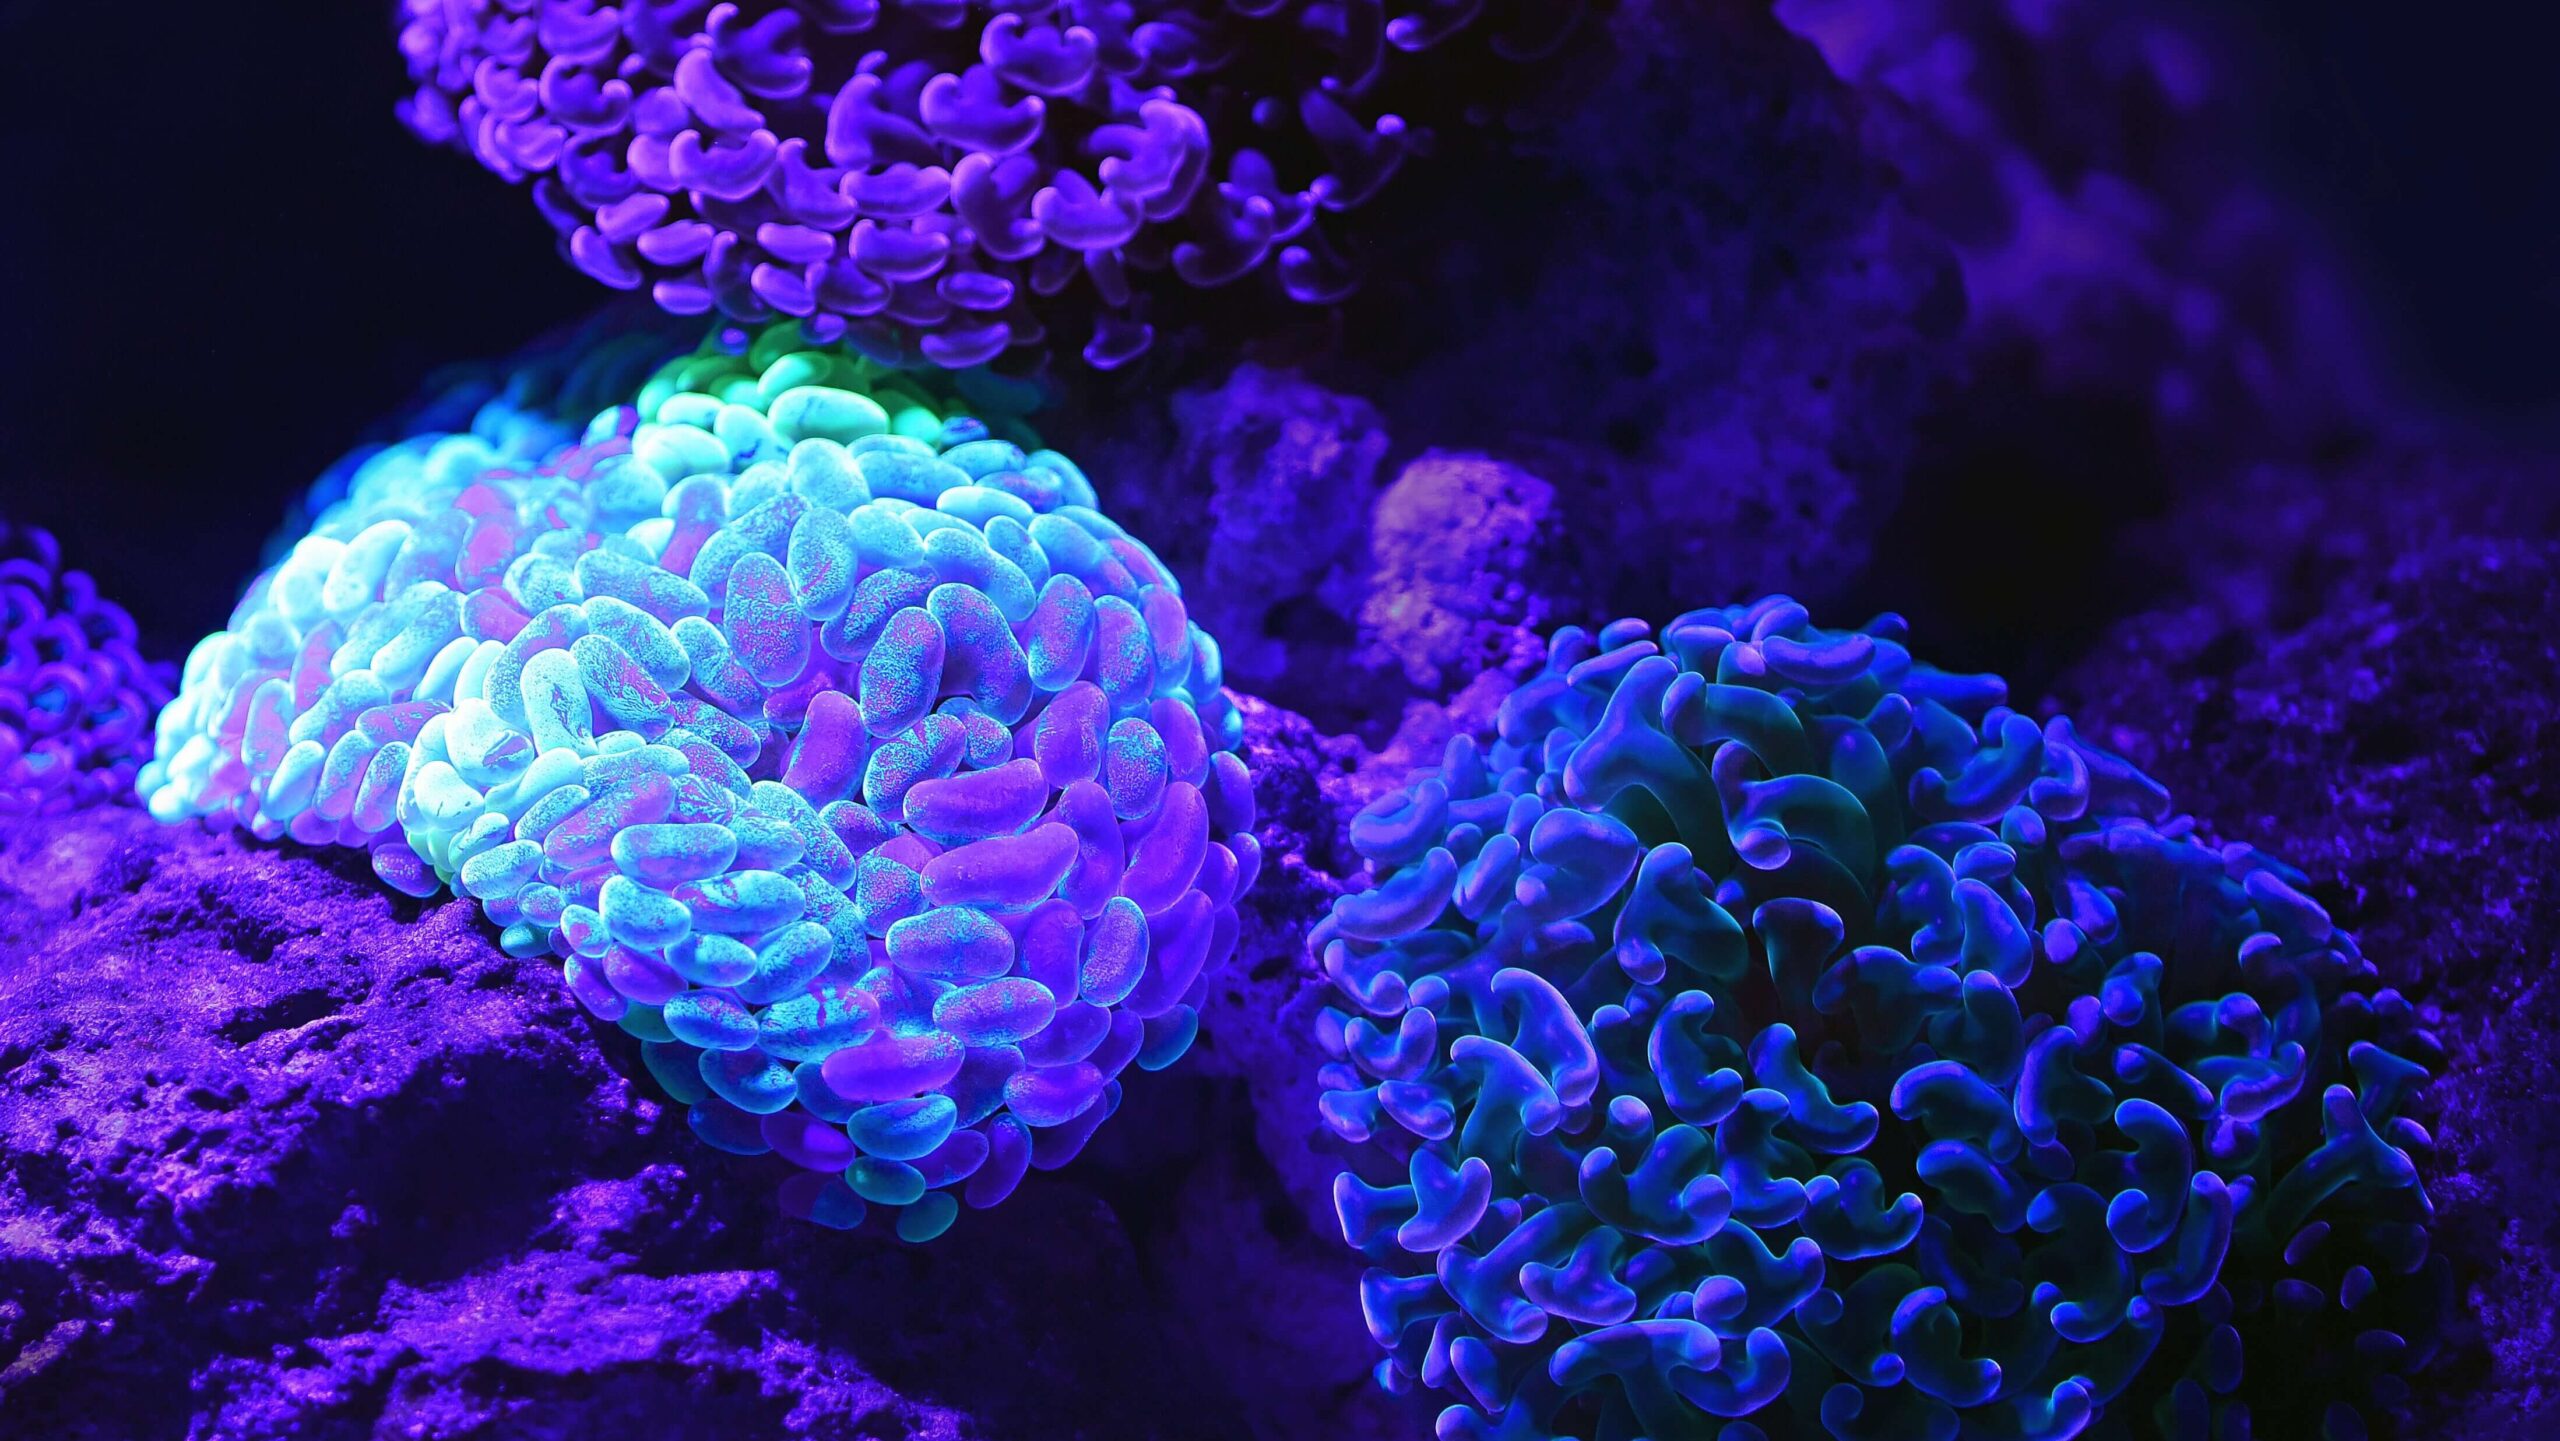 Sfondo nero. In primo piano ci sono tre palle formate da organismi simili a champignon di colore azzurro, blu e viola. I colori si mesconlano con lo sfondo e lo rendono sfumato.